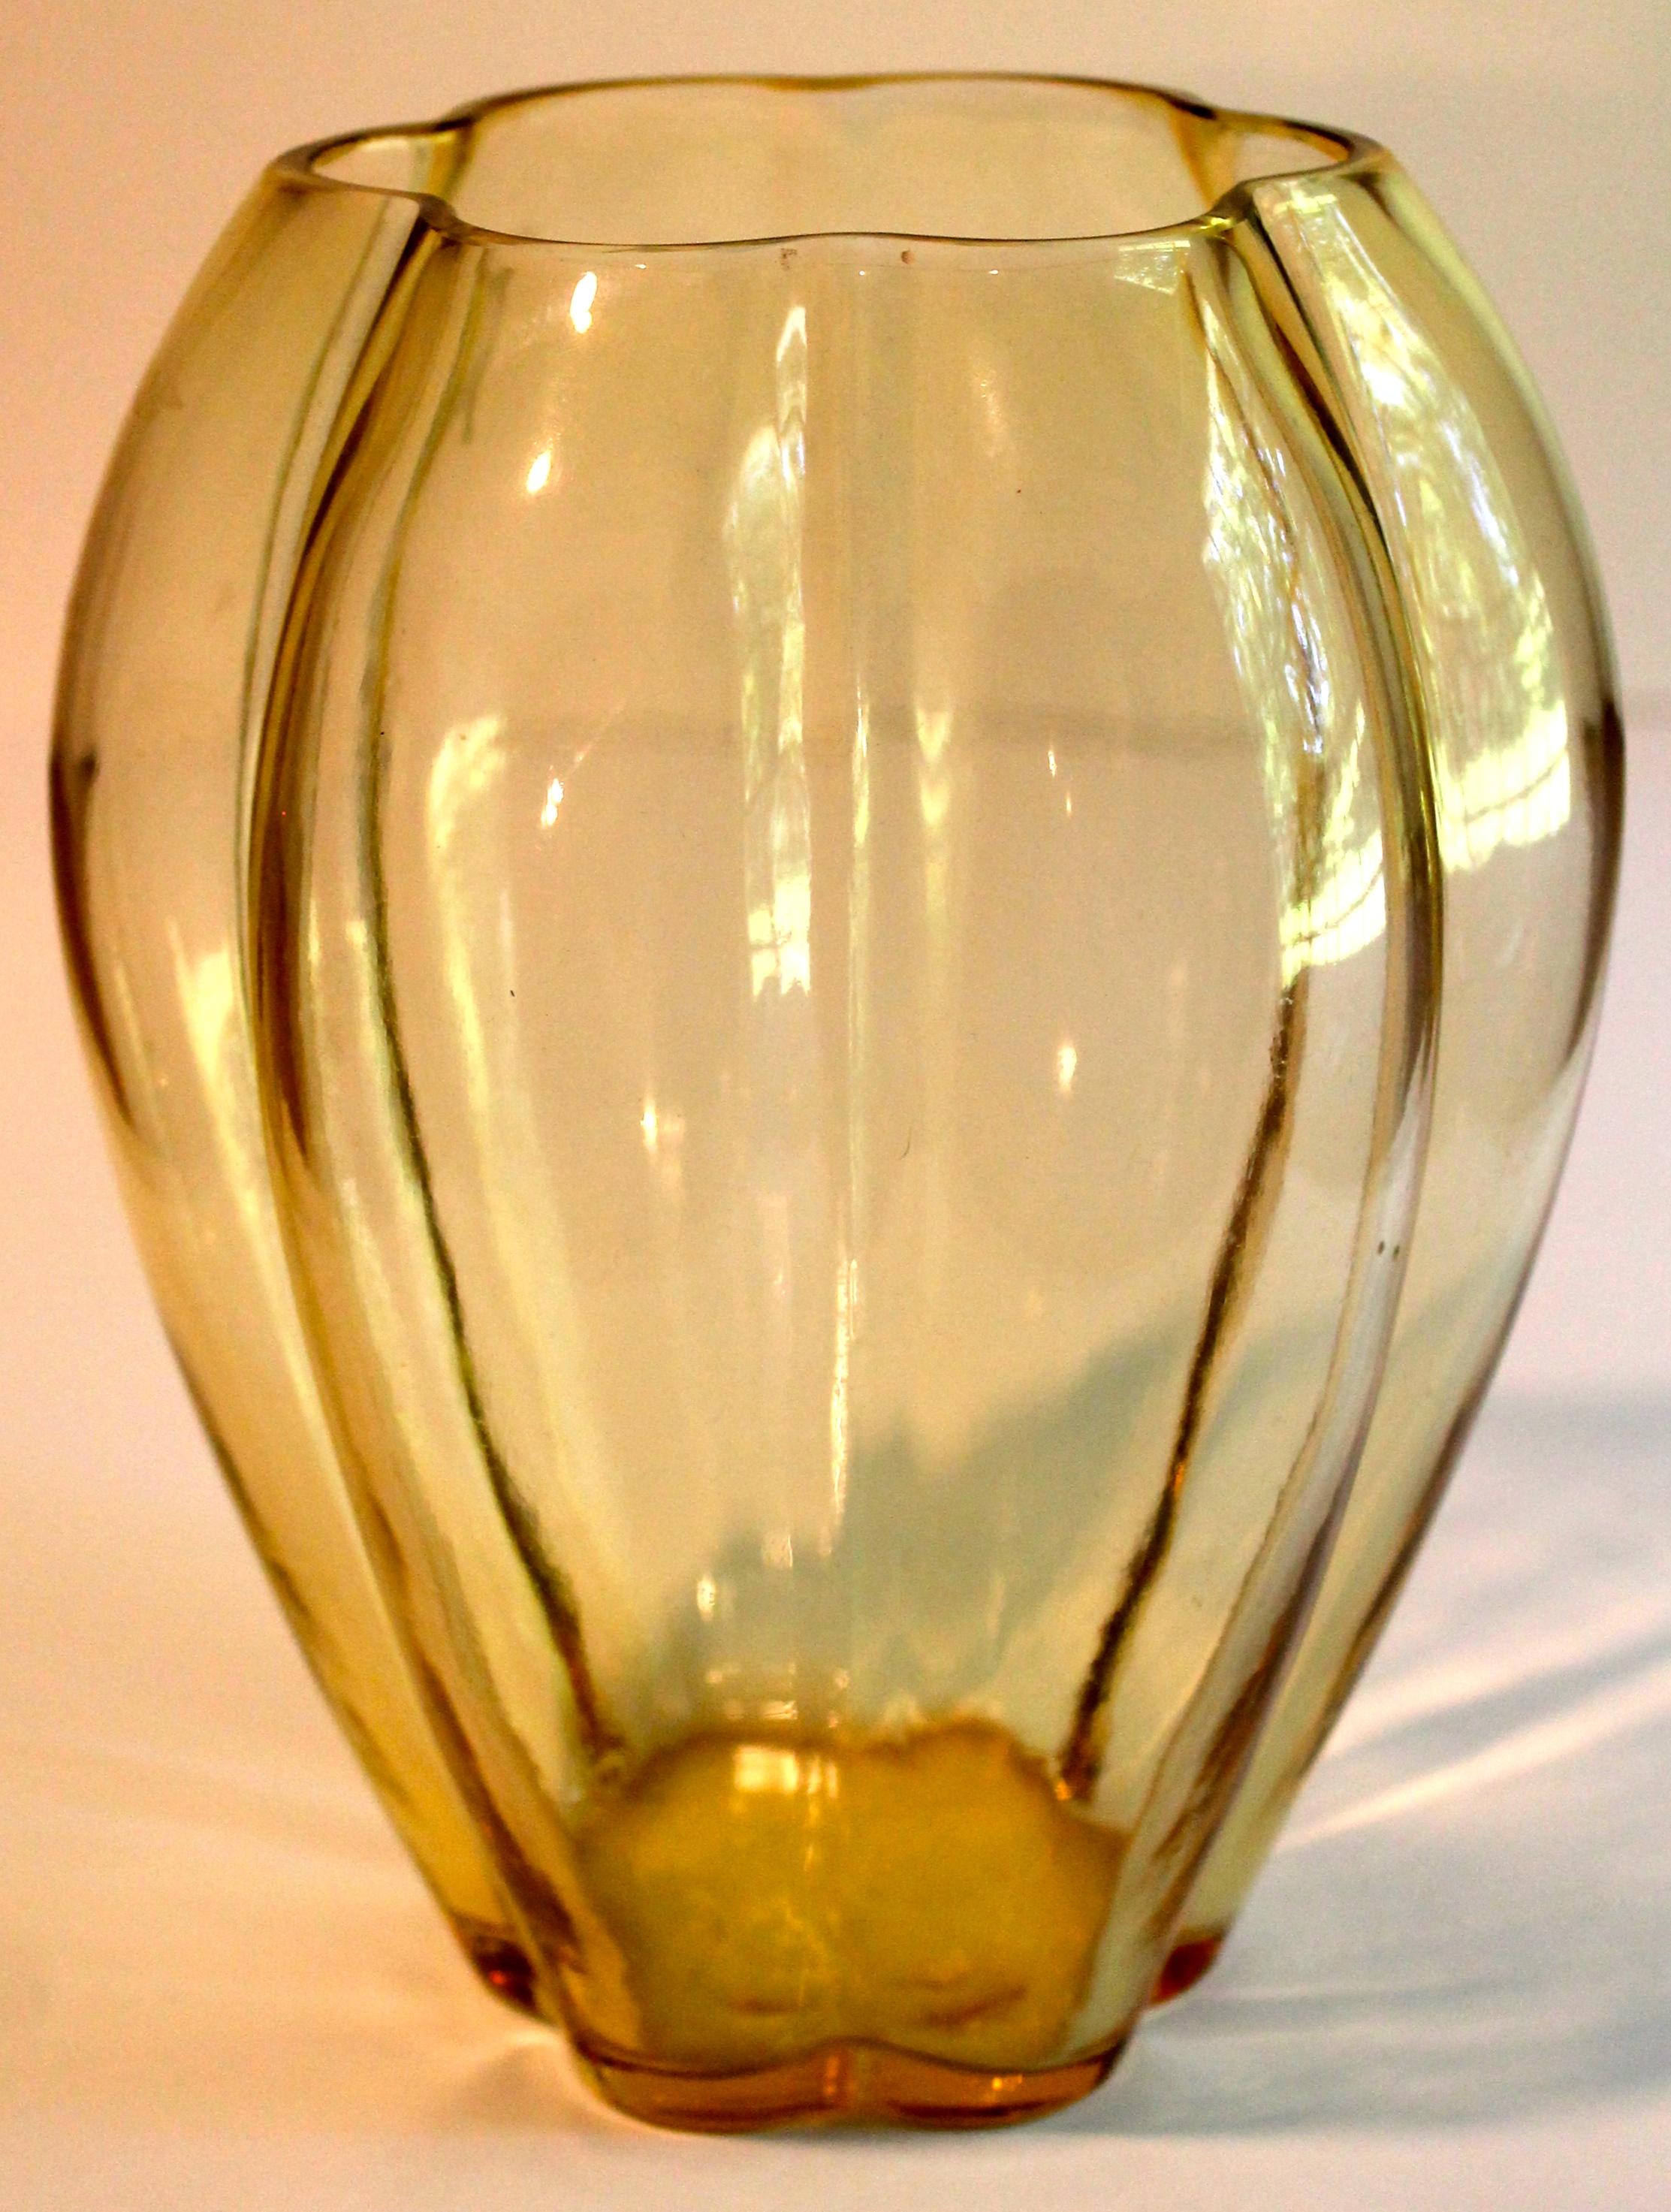 Magnifique vase parfaitement intact de la célèbre série du designer industriel américain George Sakier conçue pour Fostoria.